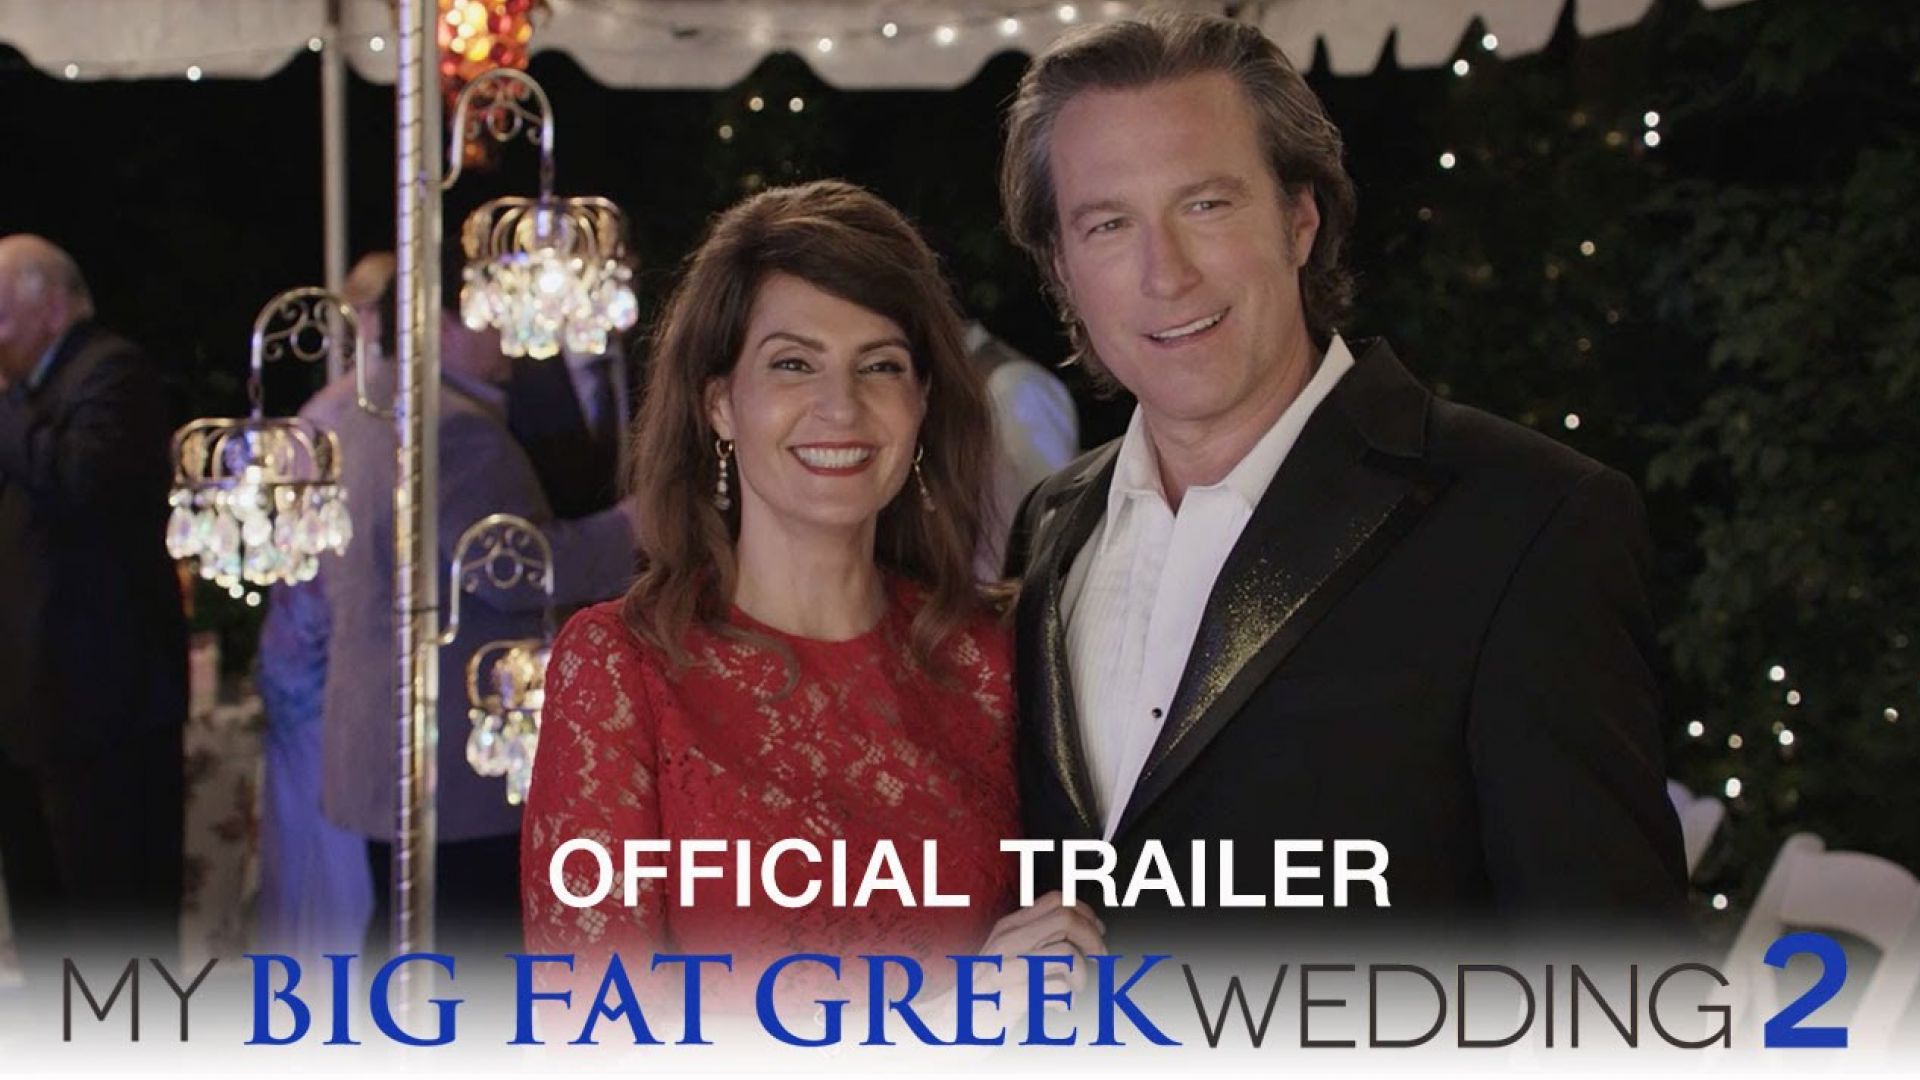 My Big Fat Greek Wedding 2 Official Trailer 